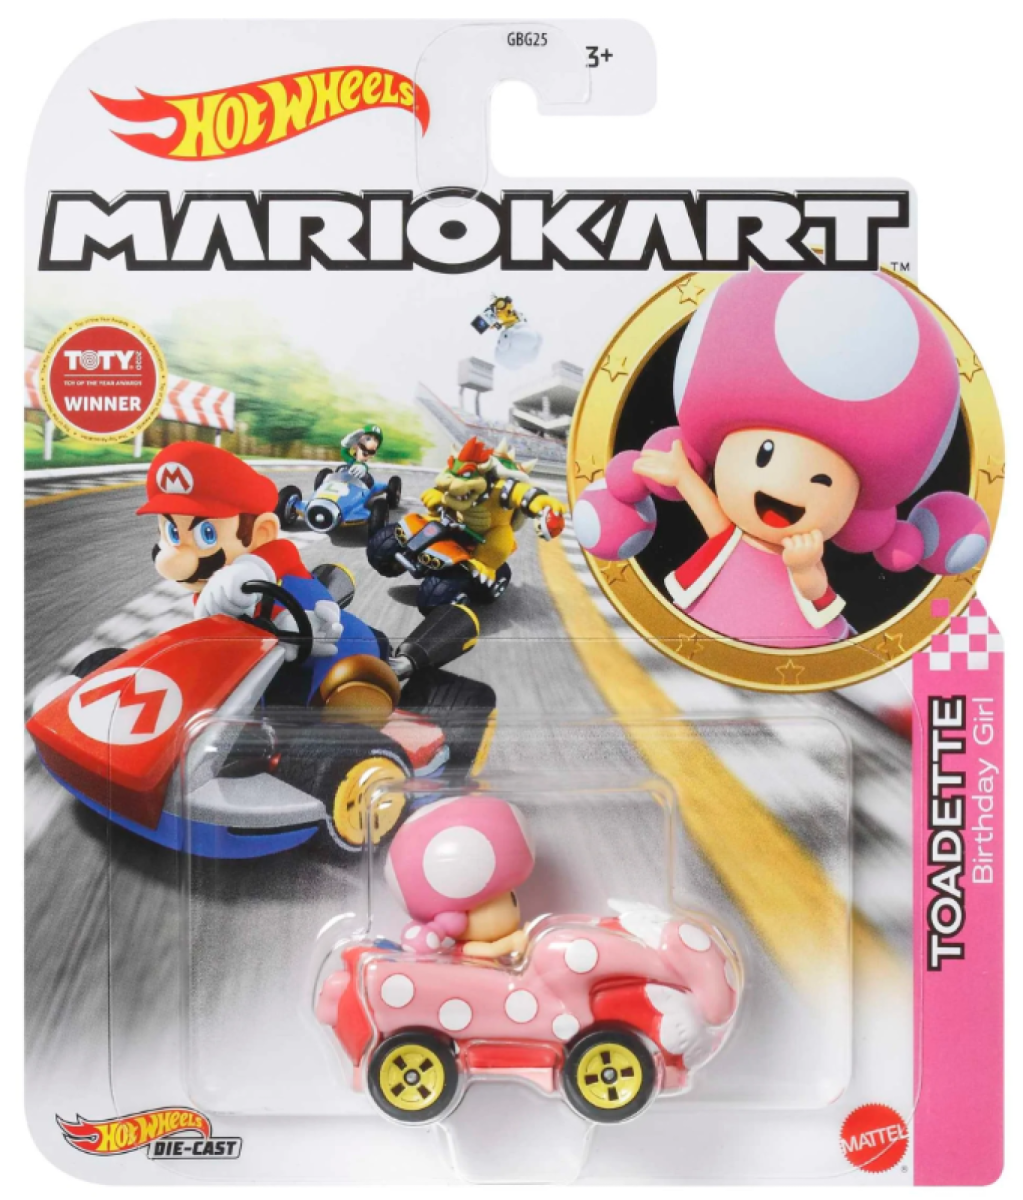 Hot Wheels Mario Kart Rosalina Toadette Birthday Princess Daisy Peach 